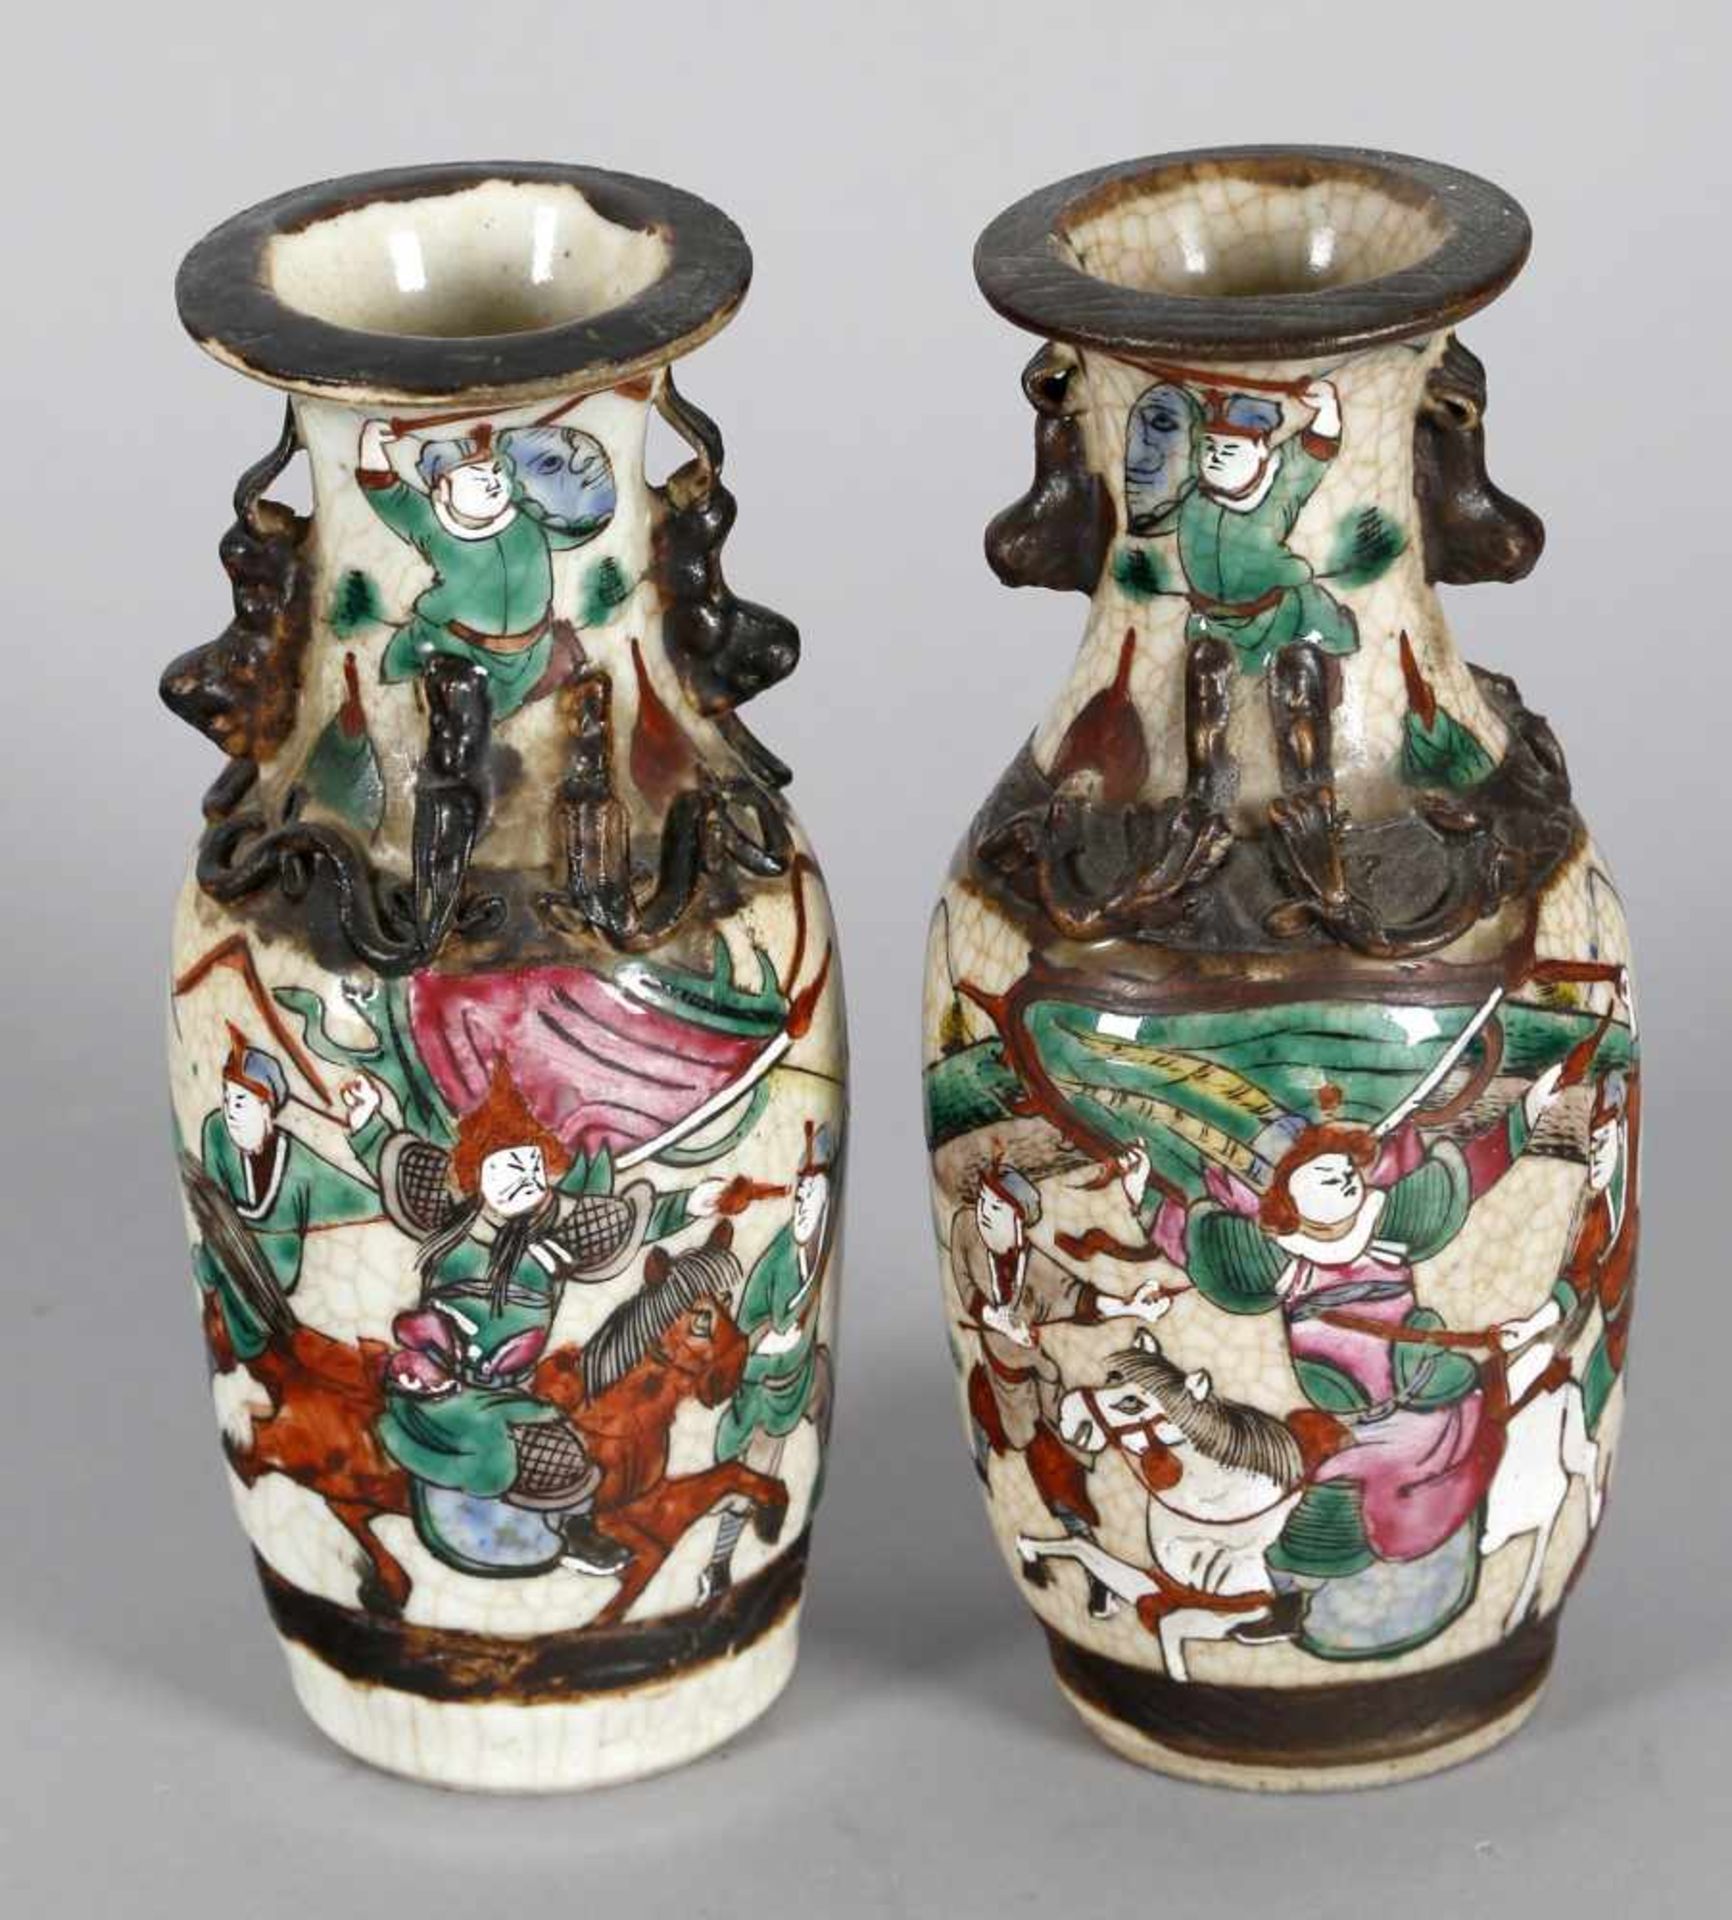 Paar chinesische Vasen, Porzellan, um 1860-80Kampfszenen-Dekor in bunten Emailfarben auf weißem - Bild 2 aus 3